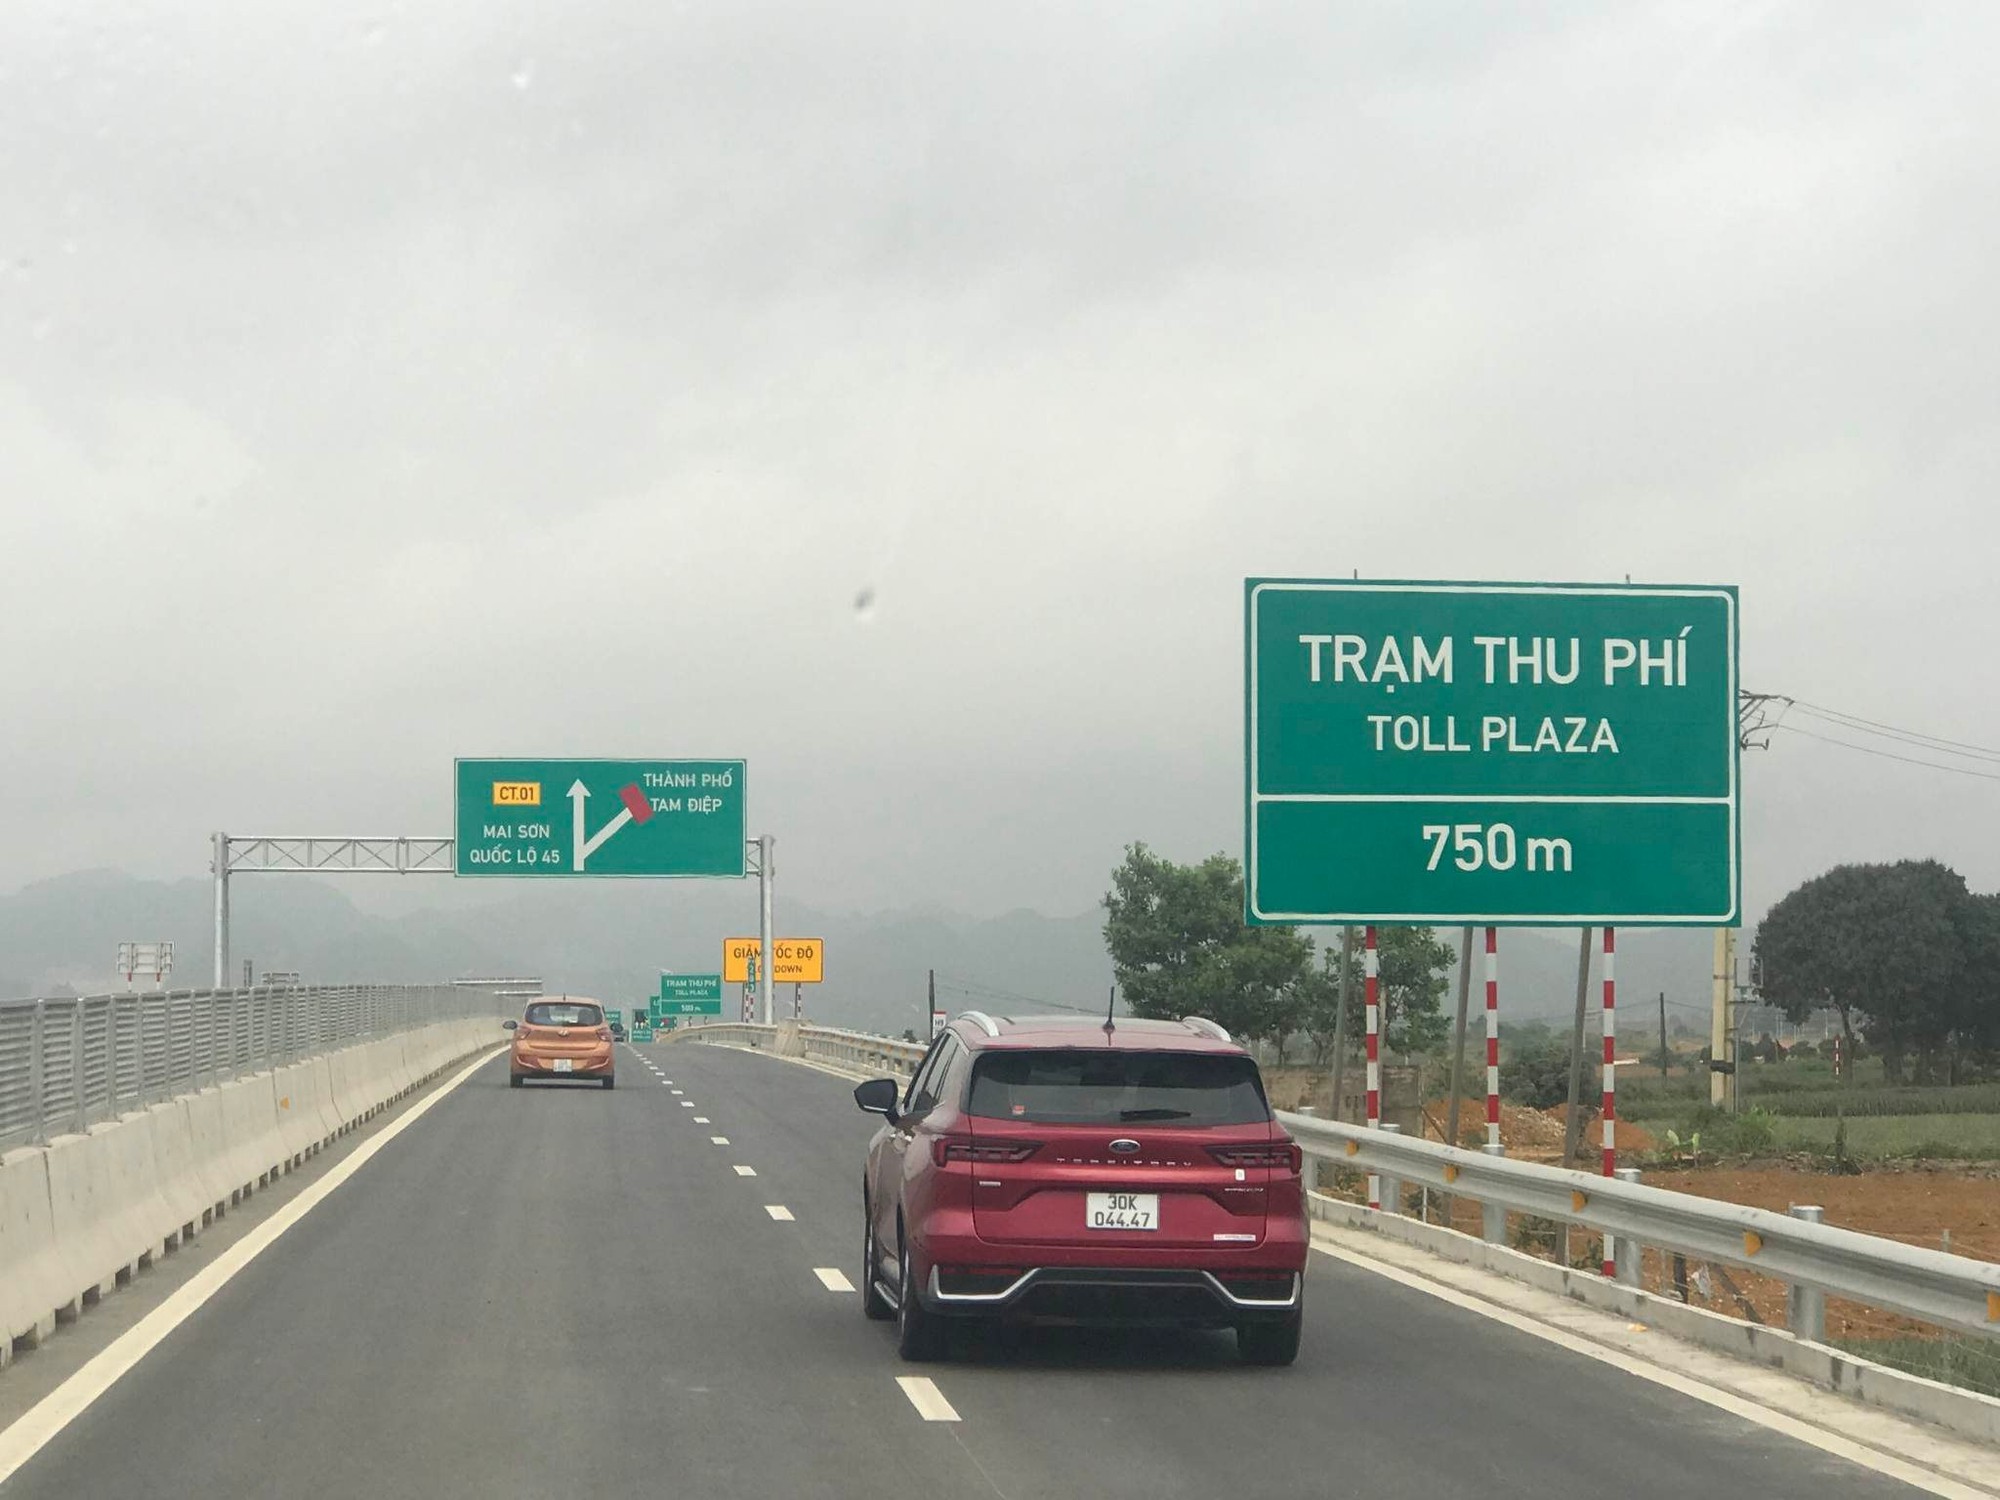 Cao tốc không có làn dừng khẩn cấp, Ninh Bình đề xuất mở rộng lên 6 làn xe - Ảnh 1.